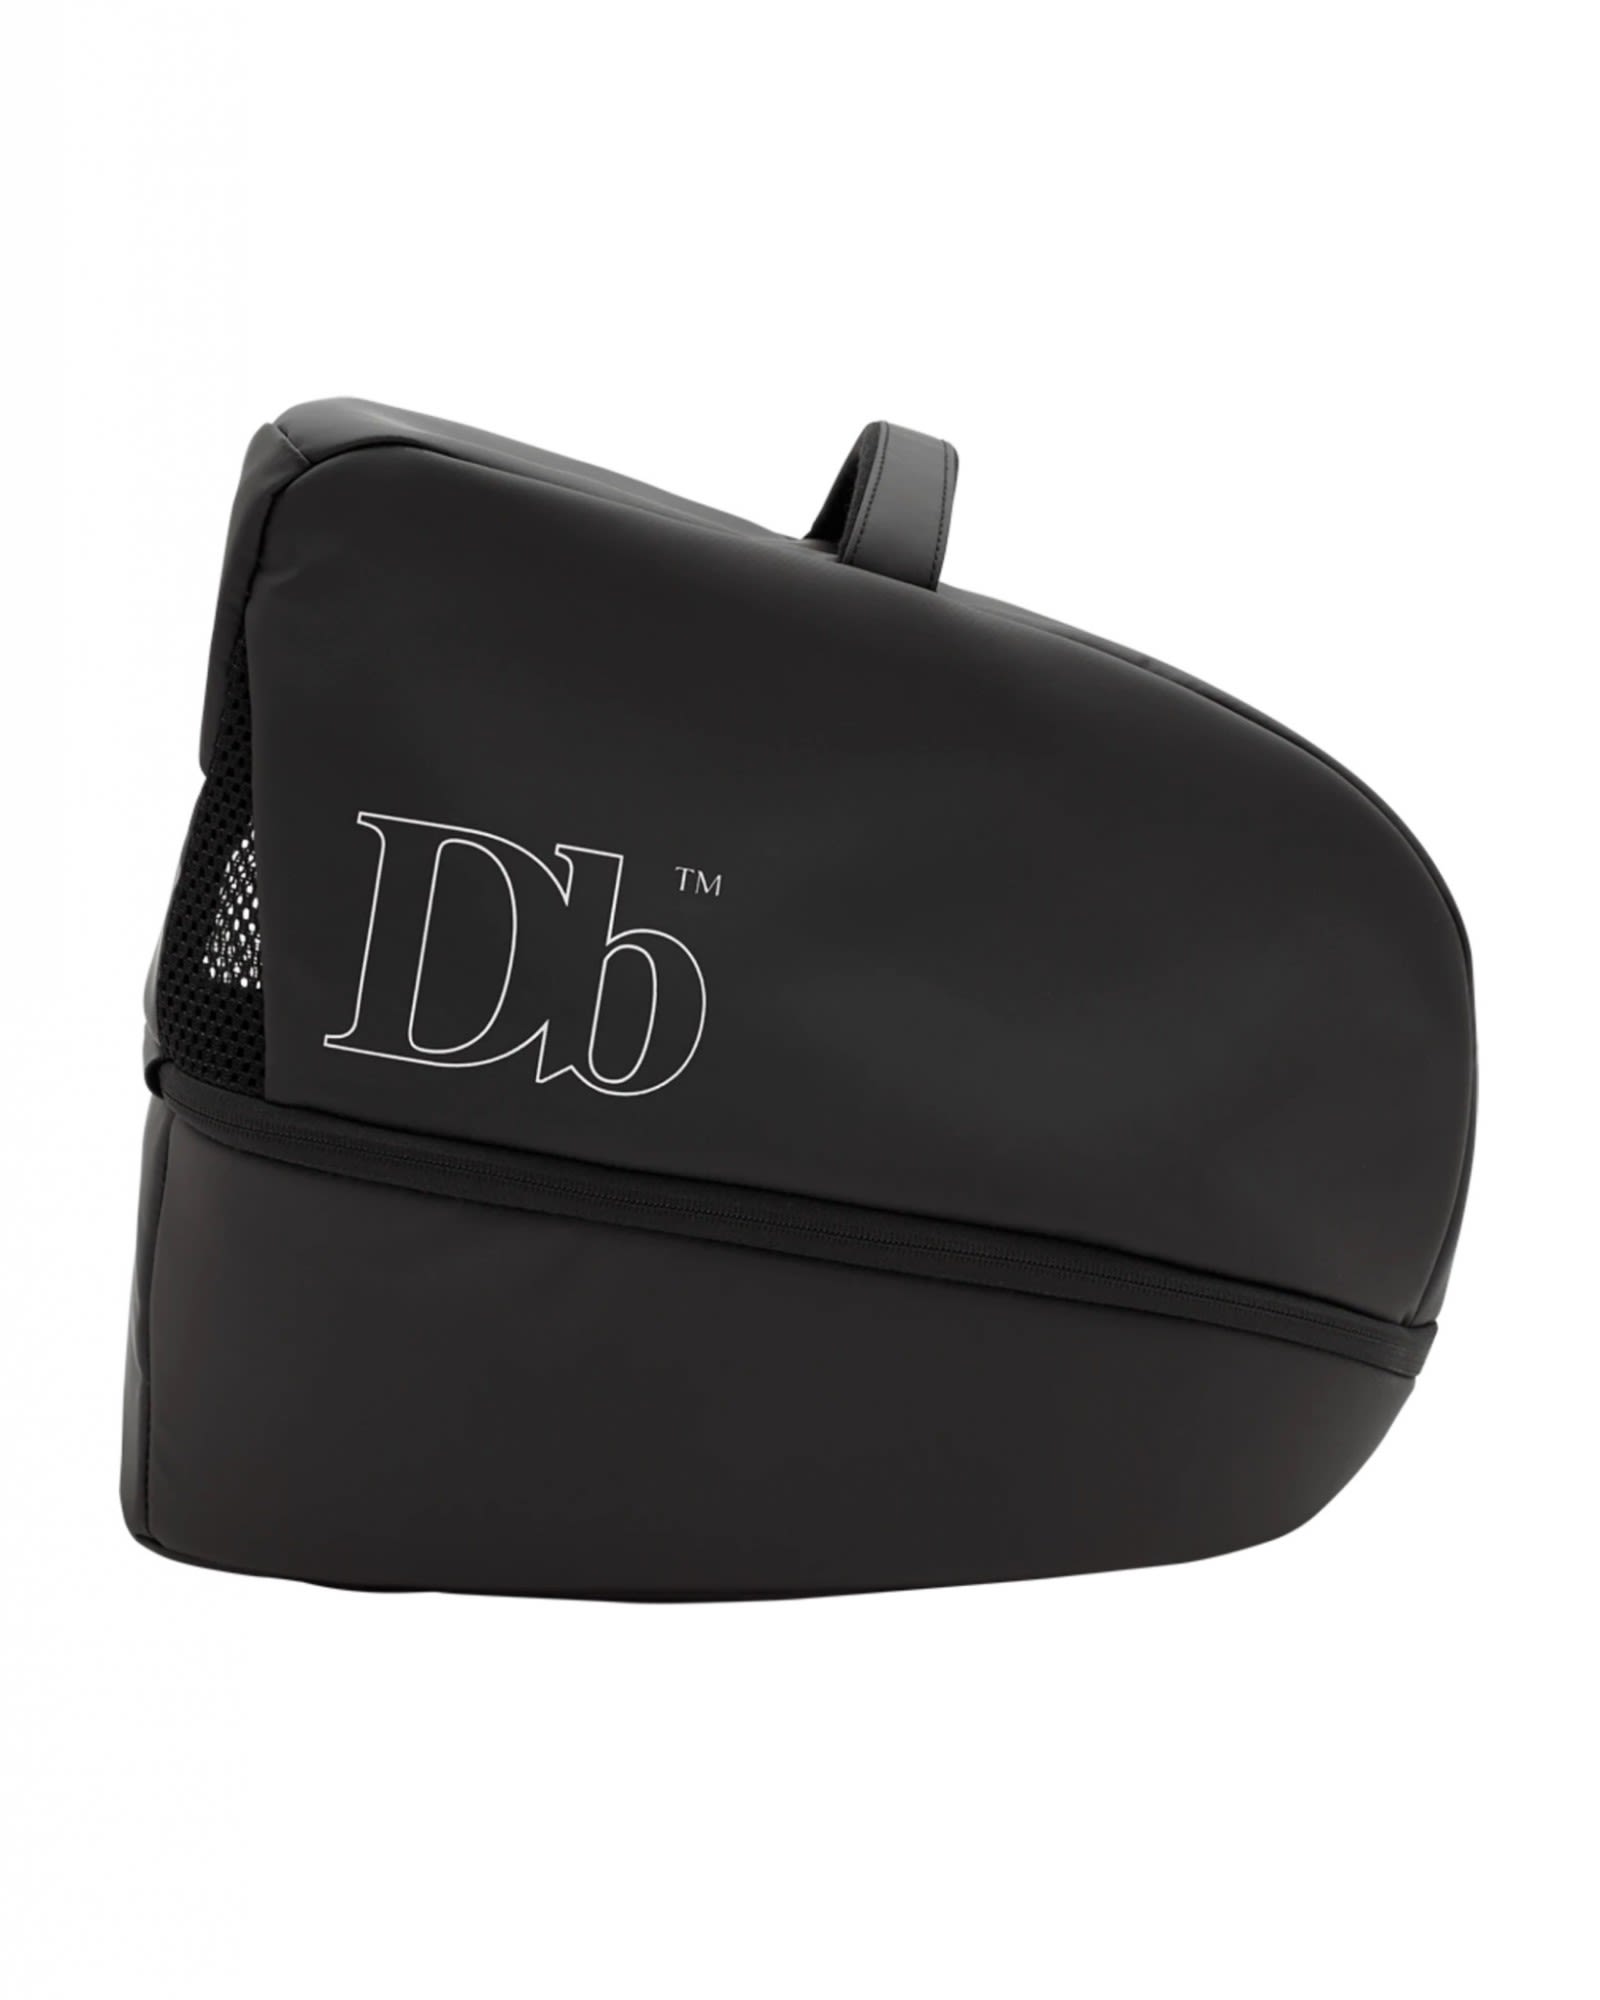 Db THE Vxla Helmet Bag Schwarz- Sonstige Taschen- Grsse One Size - Farbe Black Out unter Db